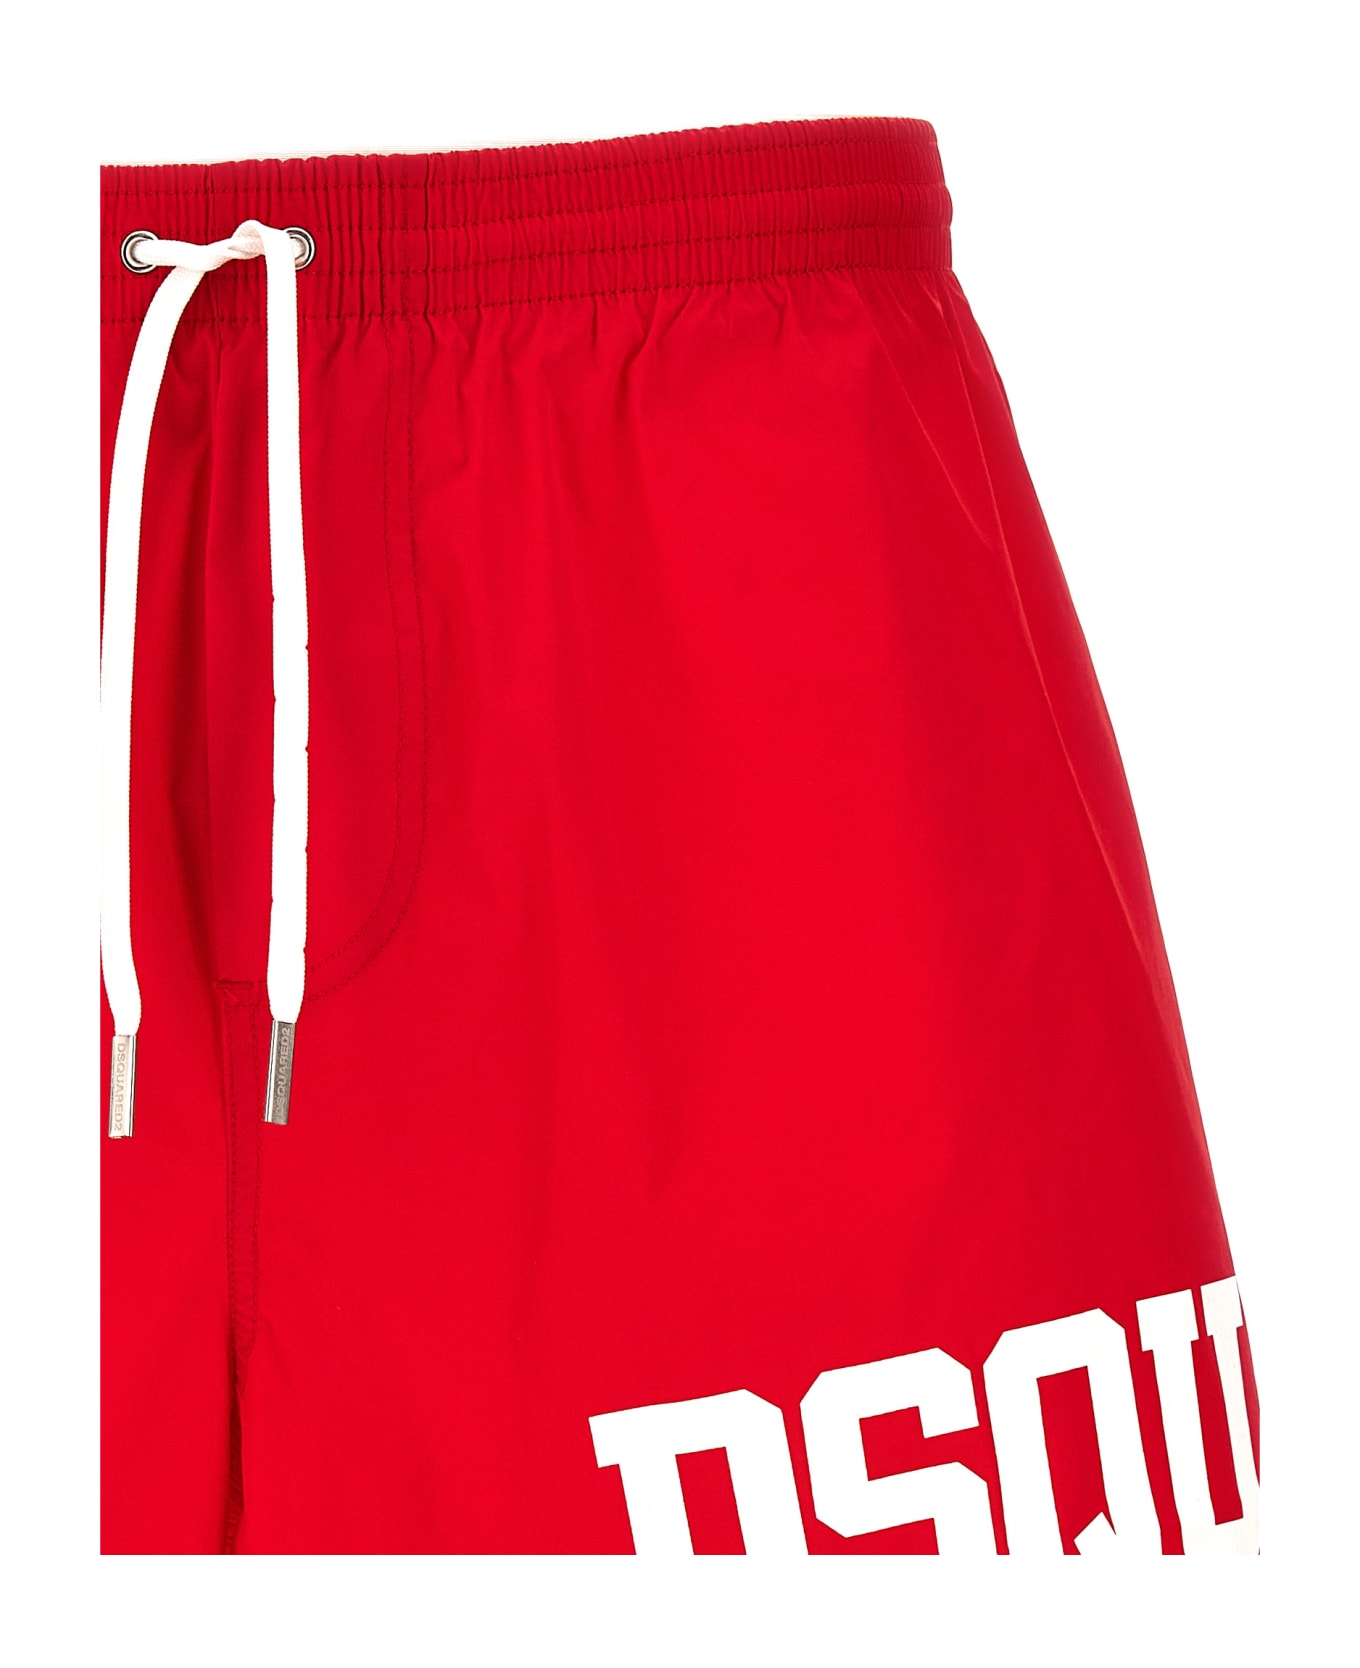 Dsquared2 Midi Boxer Shorts - Red/white